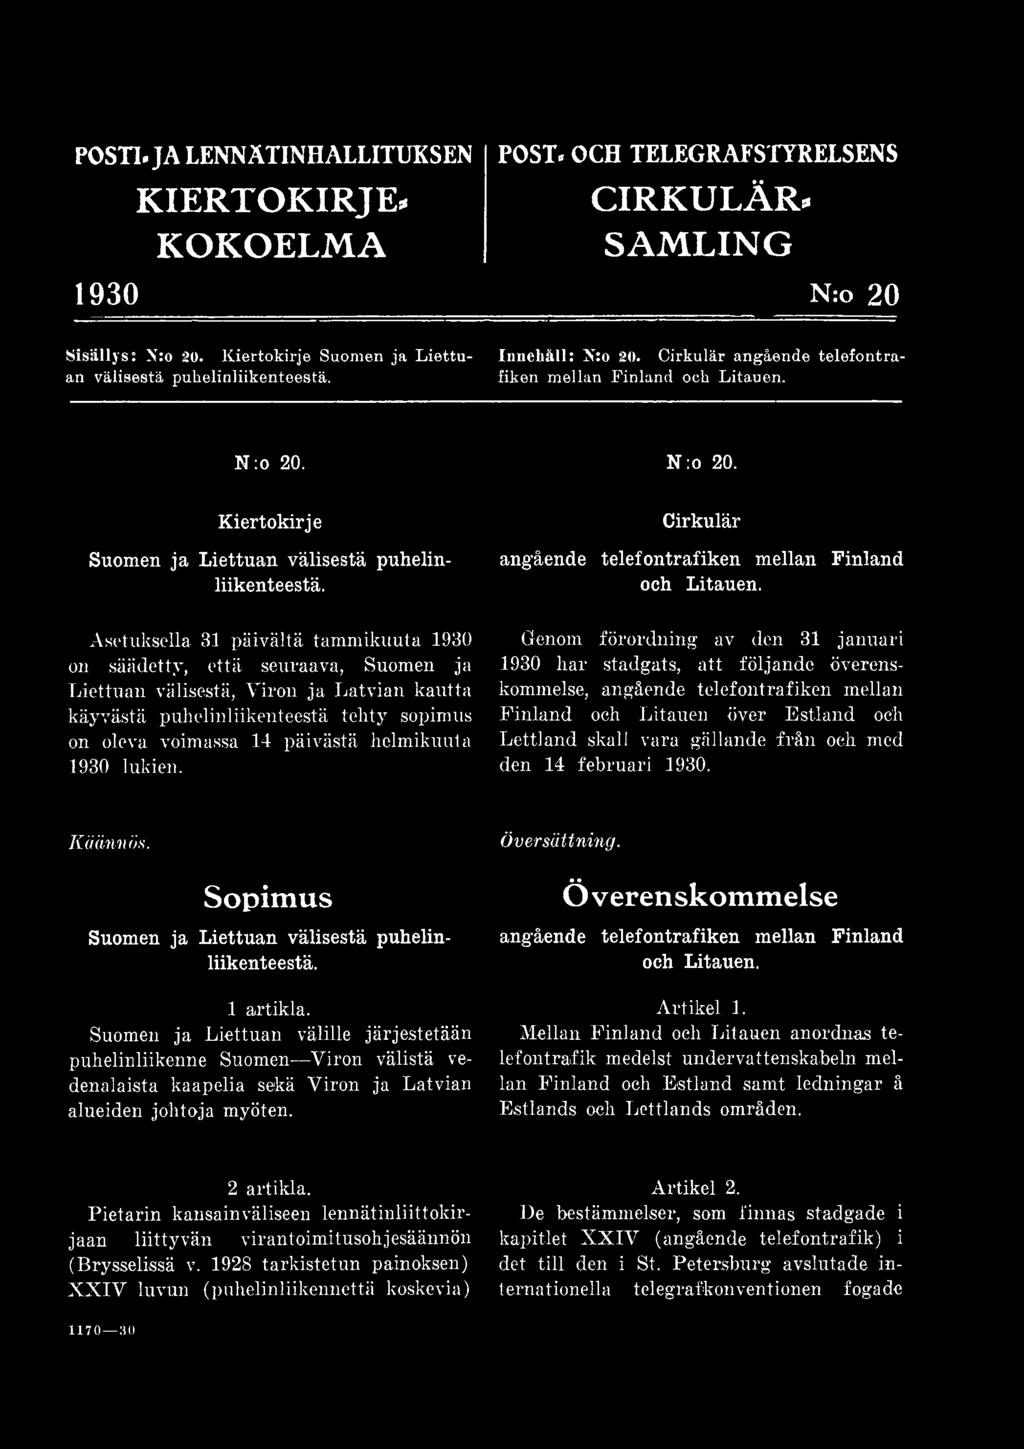 Genom förordning av den 31 januari 1930 h a r stadgats, a tt följande överenskommelse, angående telefontrafiken mellan Finland och Litauen över E stland och Lettland skall vara gällande från och med